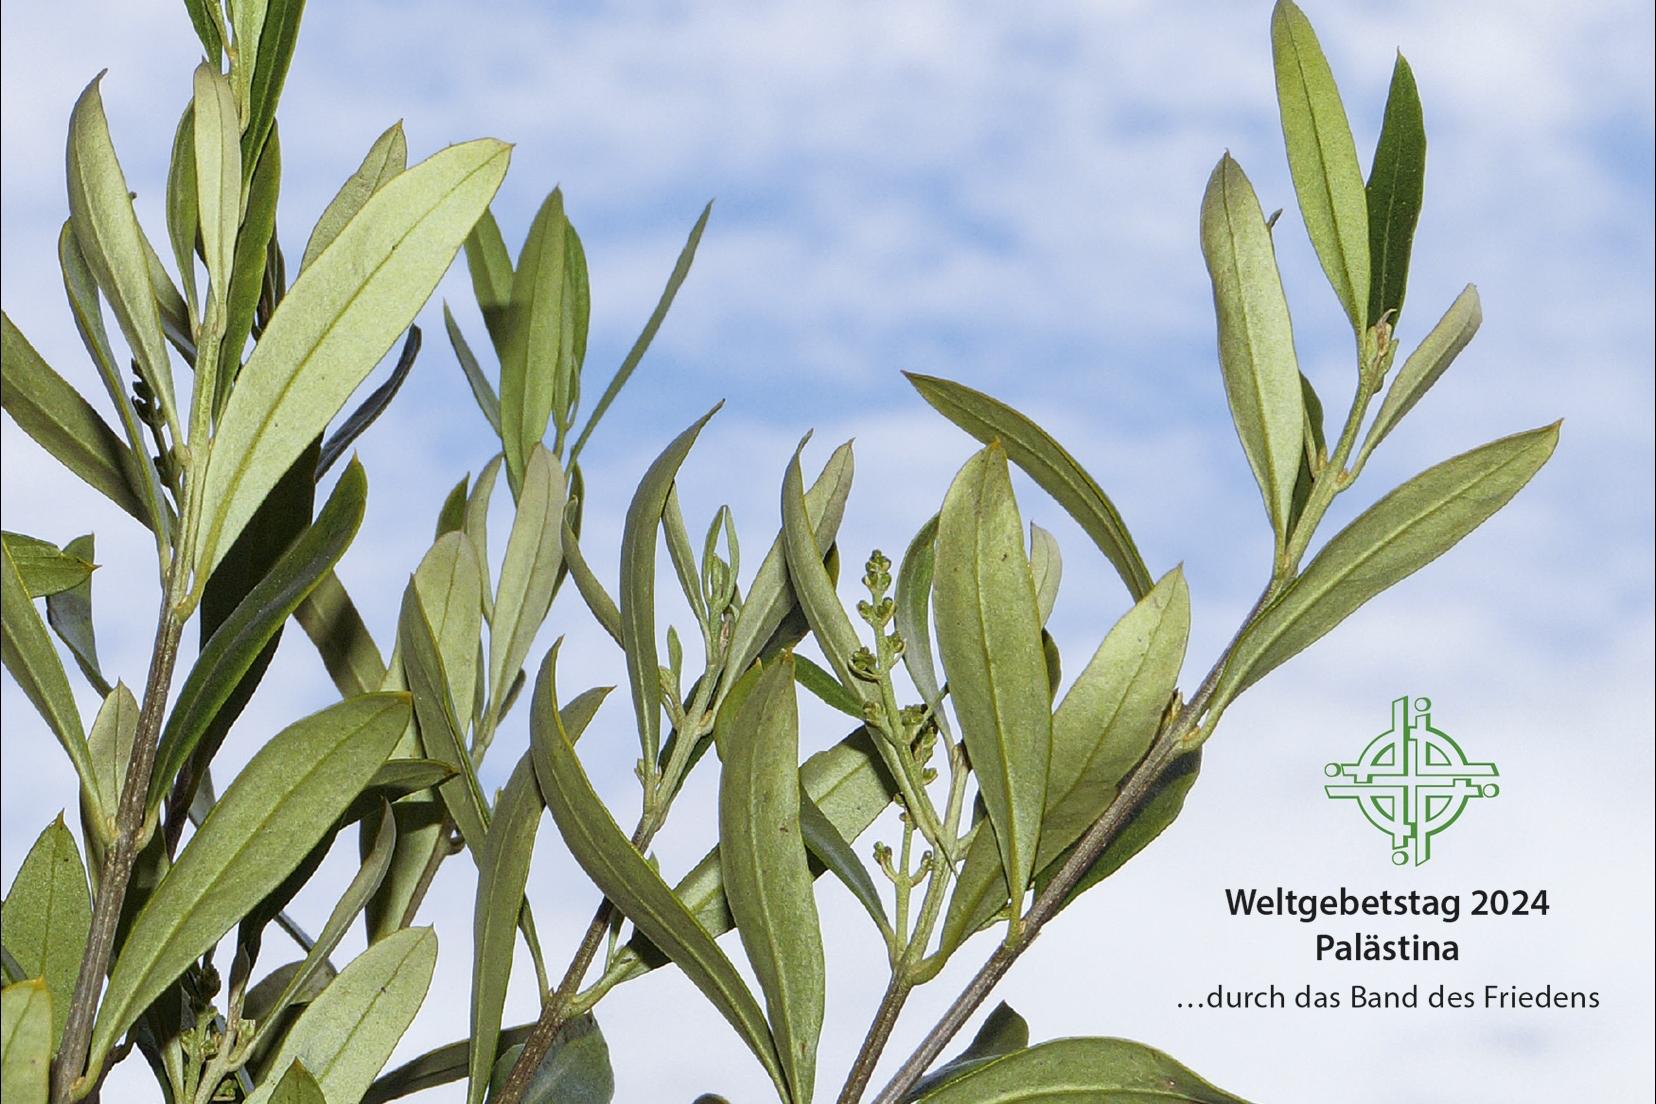 Statt eines künstlerisch gestalteten Titelbildes  gibt es im  Material für die deutschen Vorbereitungsgruppen ein neutrales Motiv mit Oliven-zweigen als Friedens- symbol.